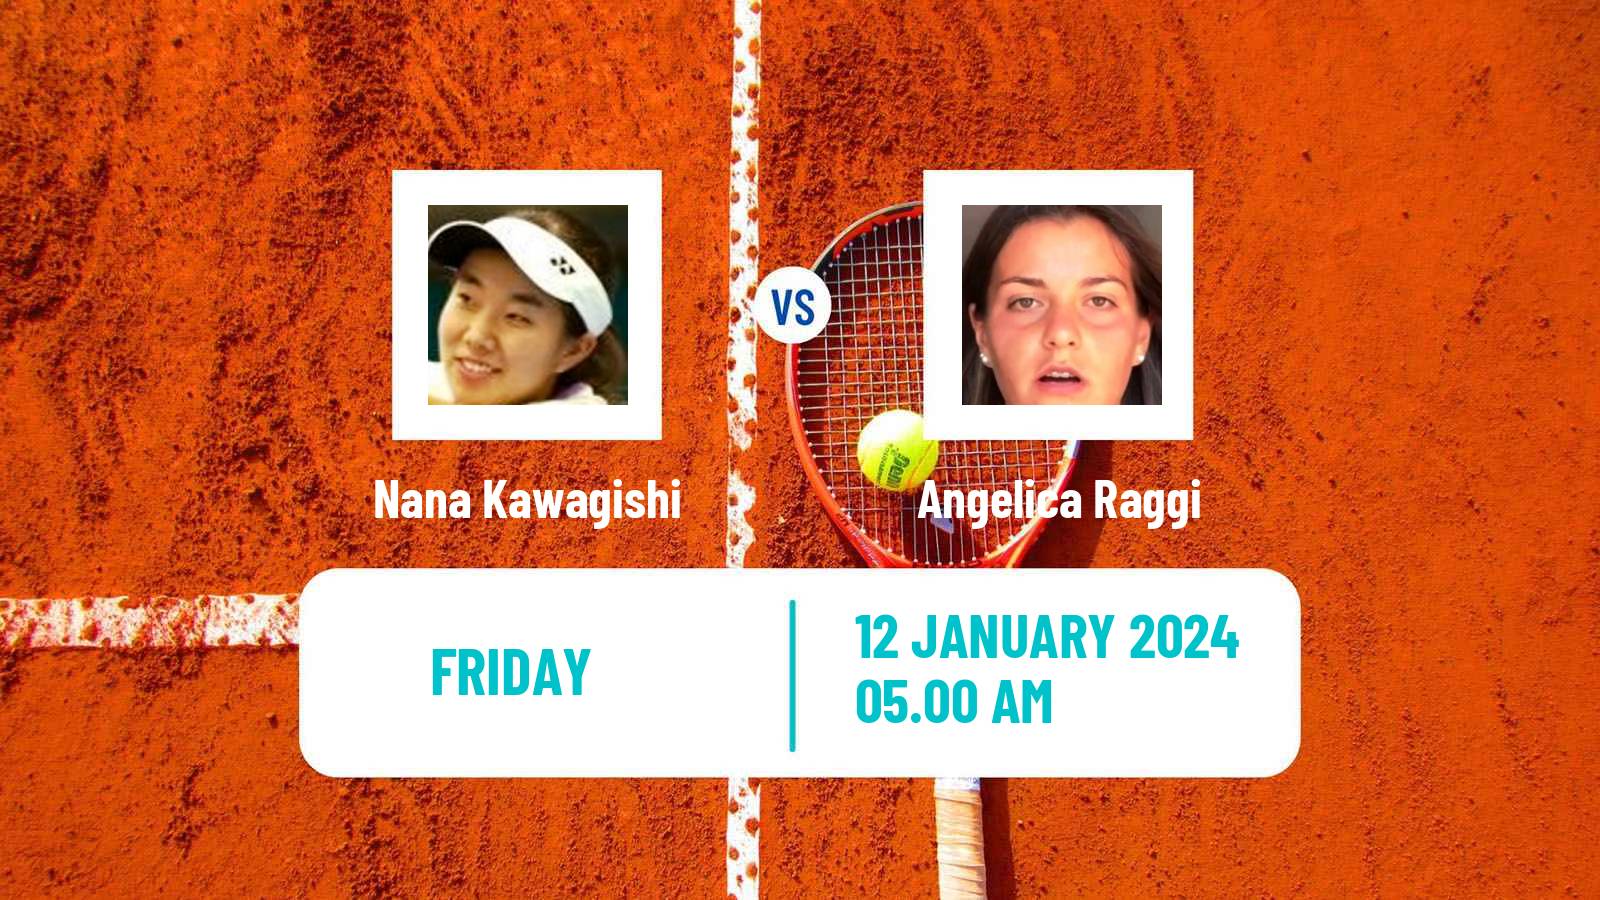 Tennis ITF W15 Monastir 2 Women Nana Kawagishi - Angelica Raggi